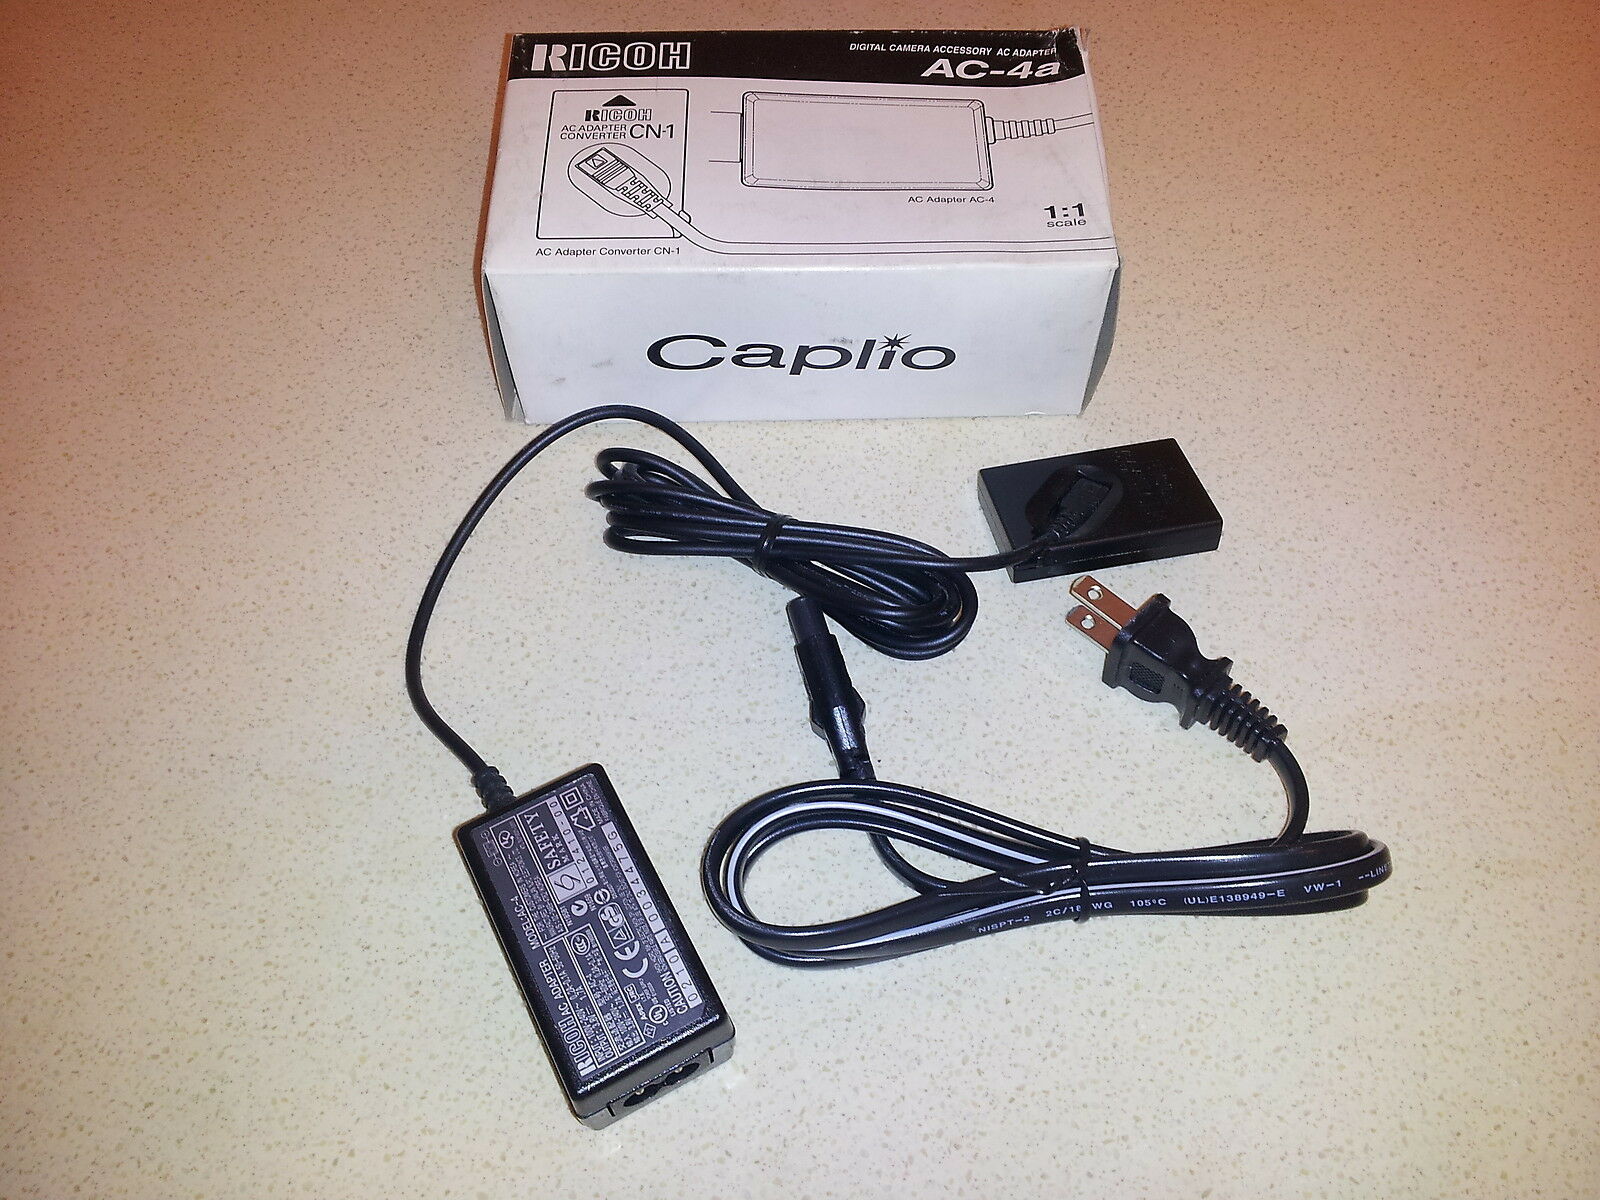 Ricoh AC-4a 172333 Caplio AC Adapter Power Supply Cord Cable Charger Digital Camera Genuine Original